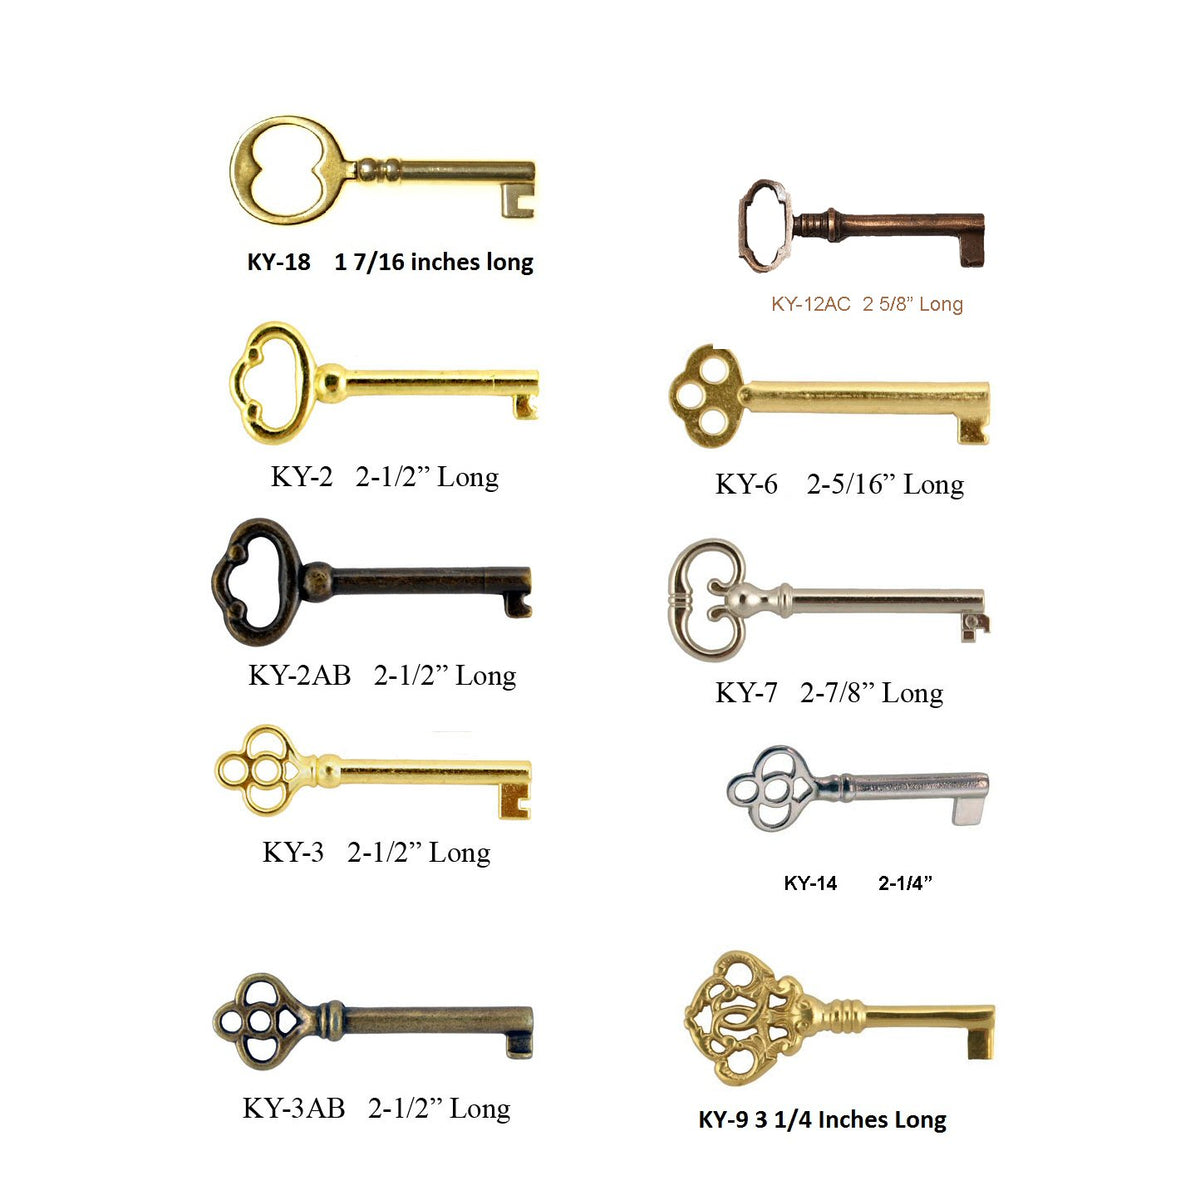 History of Skeleton Keys